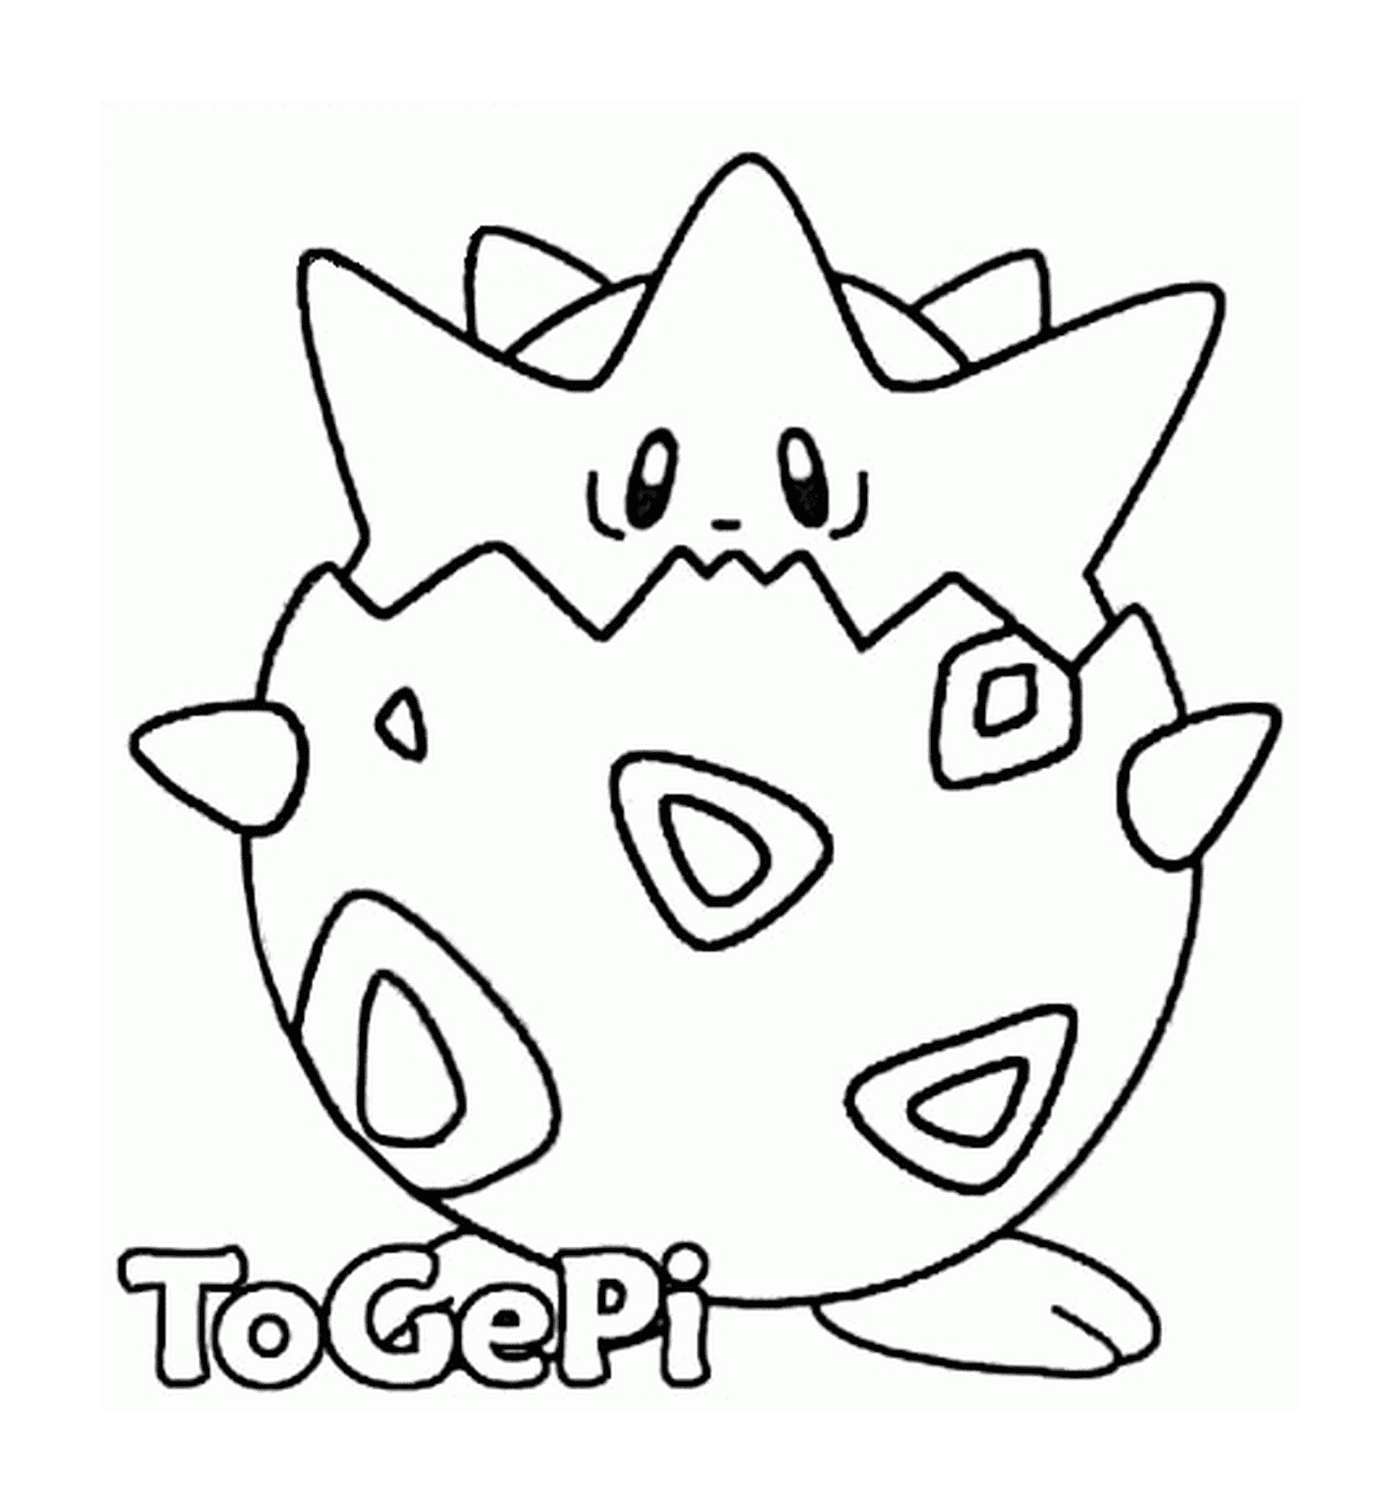  Cor Pokémon Togepi 